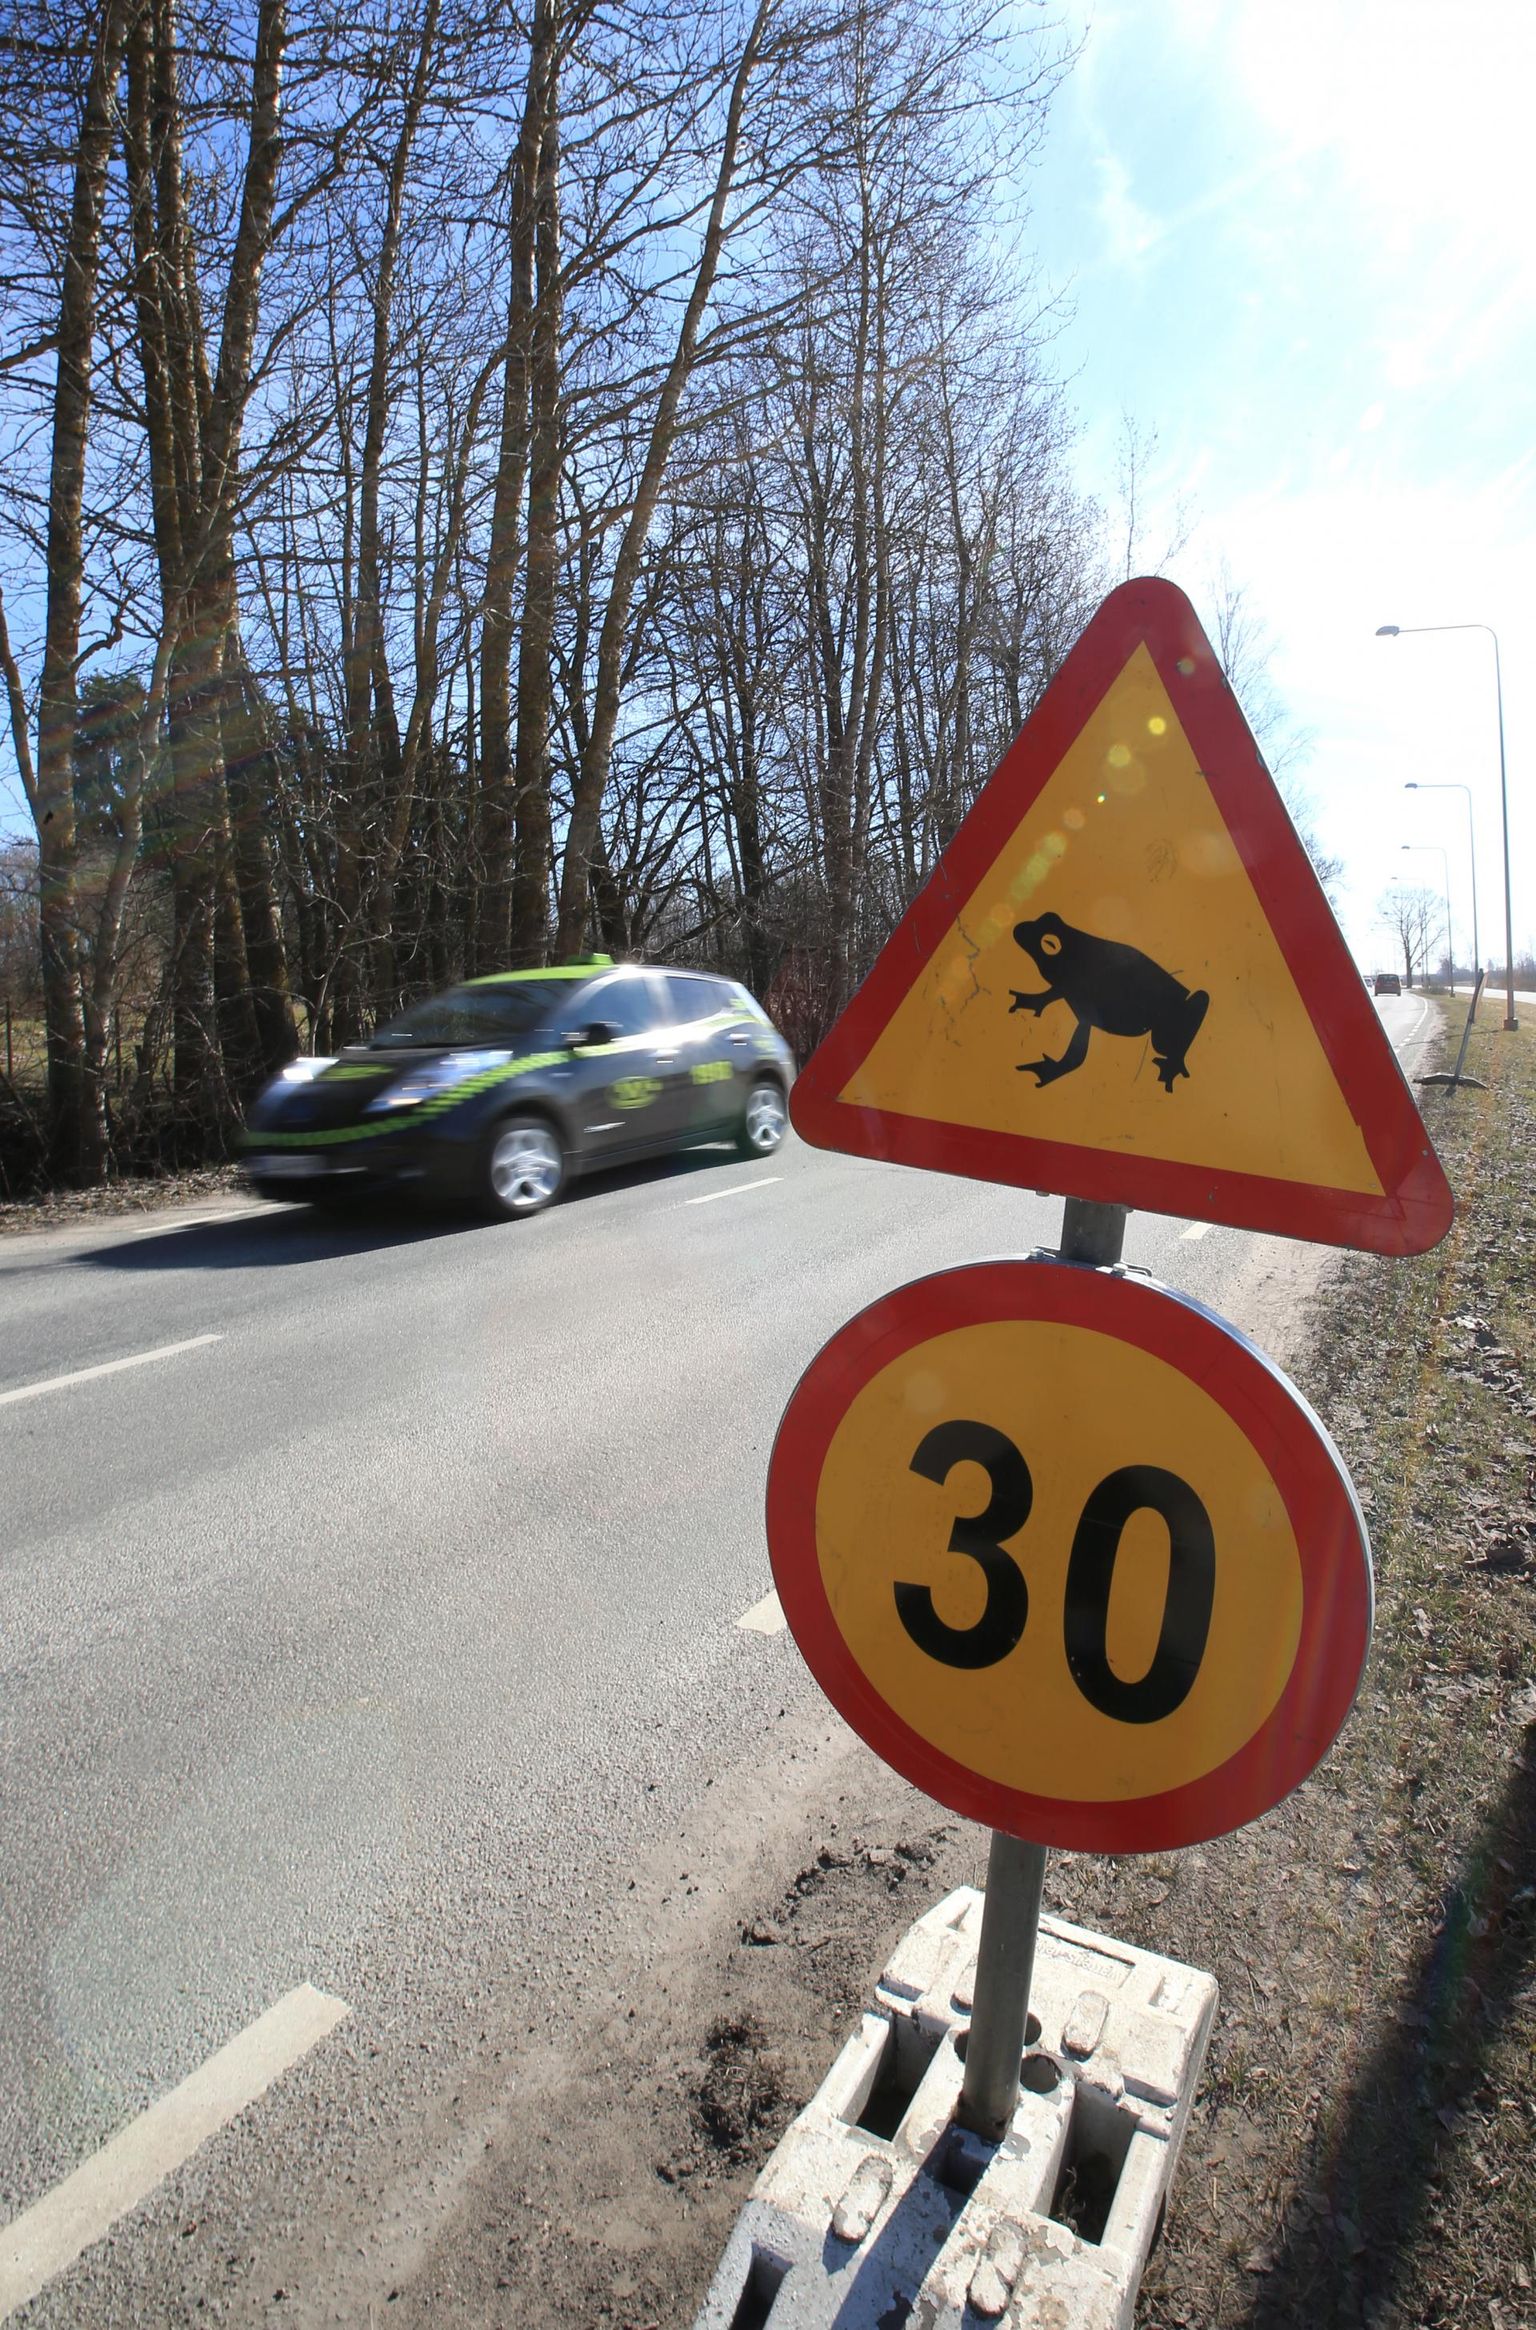 Konnade rände ajaks võidakse liikluses kehtestada küll kiirusepiirangud, kuid vabatahtlikud abilised loomakesi tänavu hulgakesi aidata ei saa.